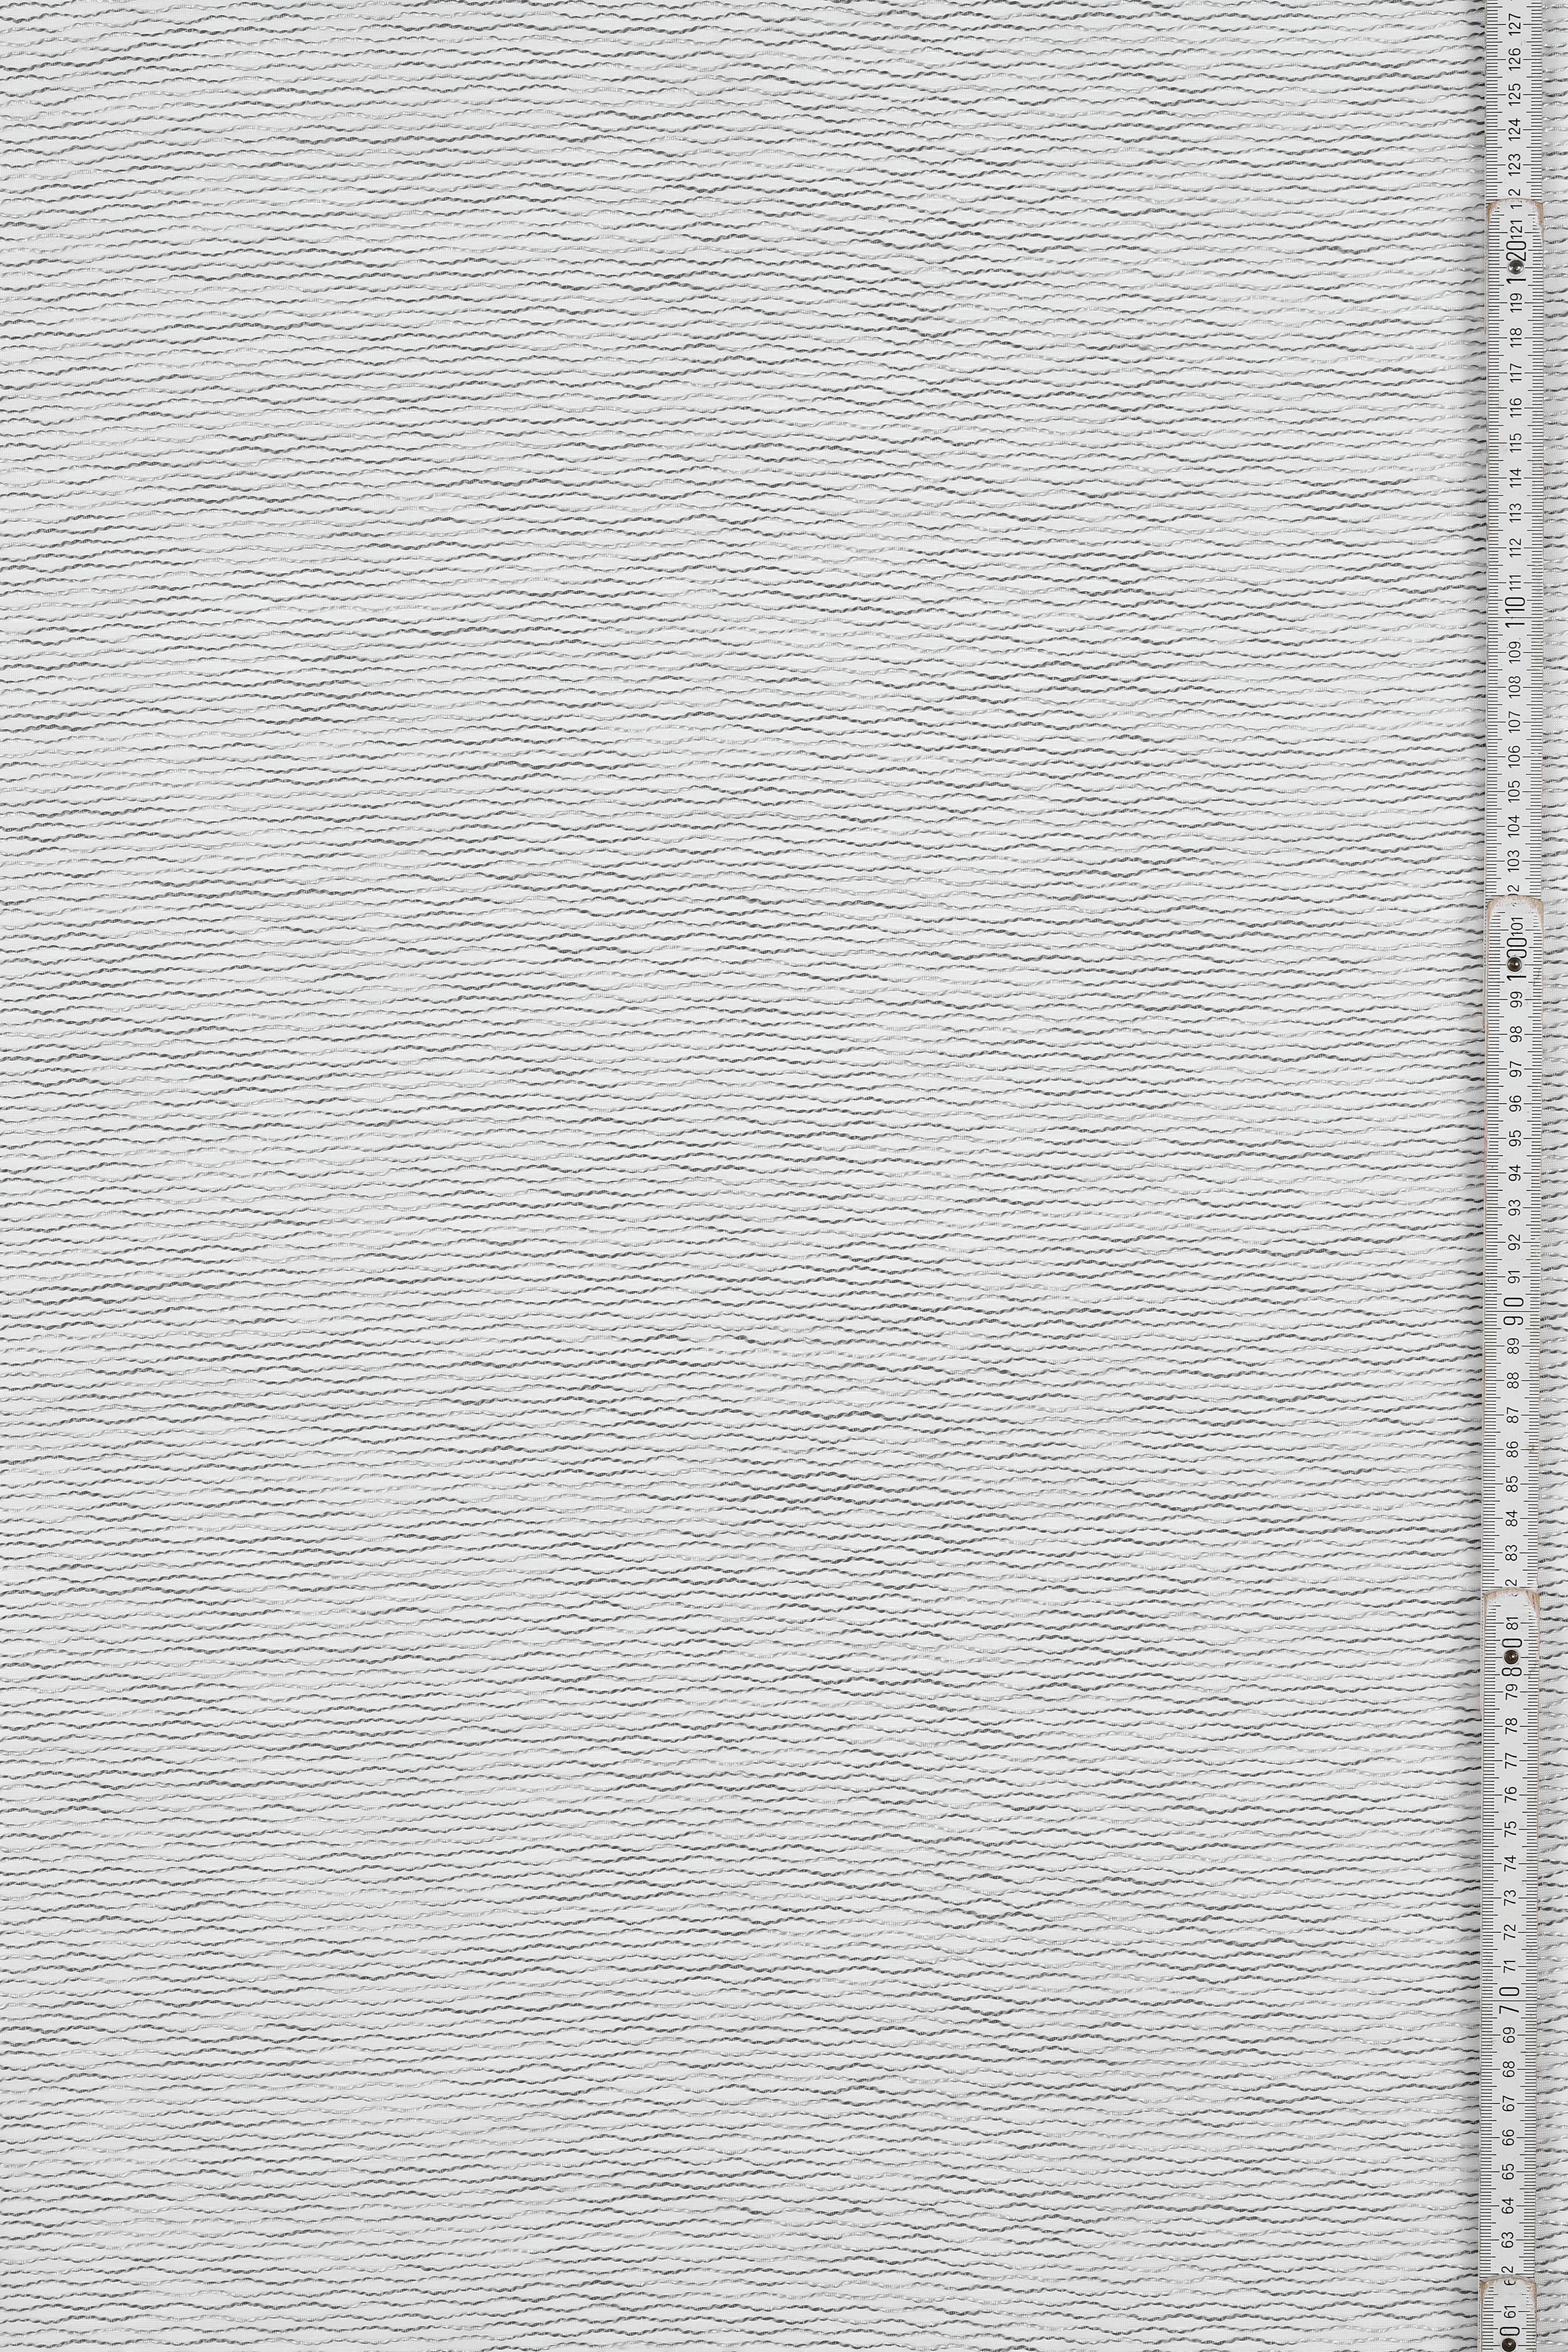 Jaquard-Voile Vorhang (1 grau transparent, Stoff Schlaufen GARDINIA, St), verdeckte Jaquard-Voile,